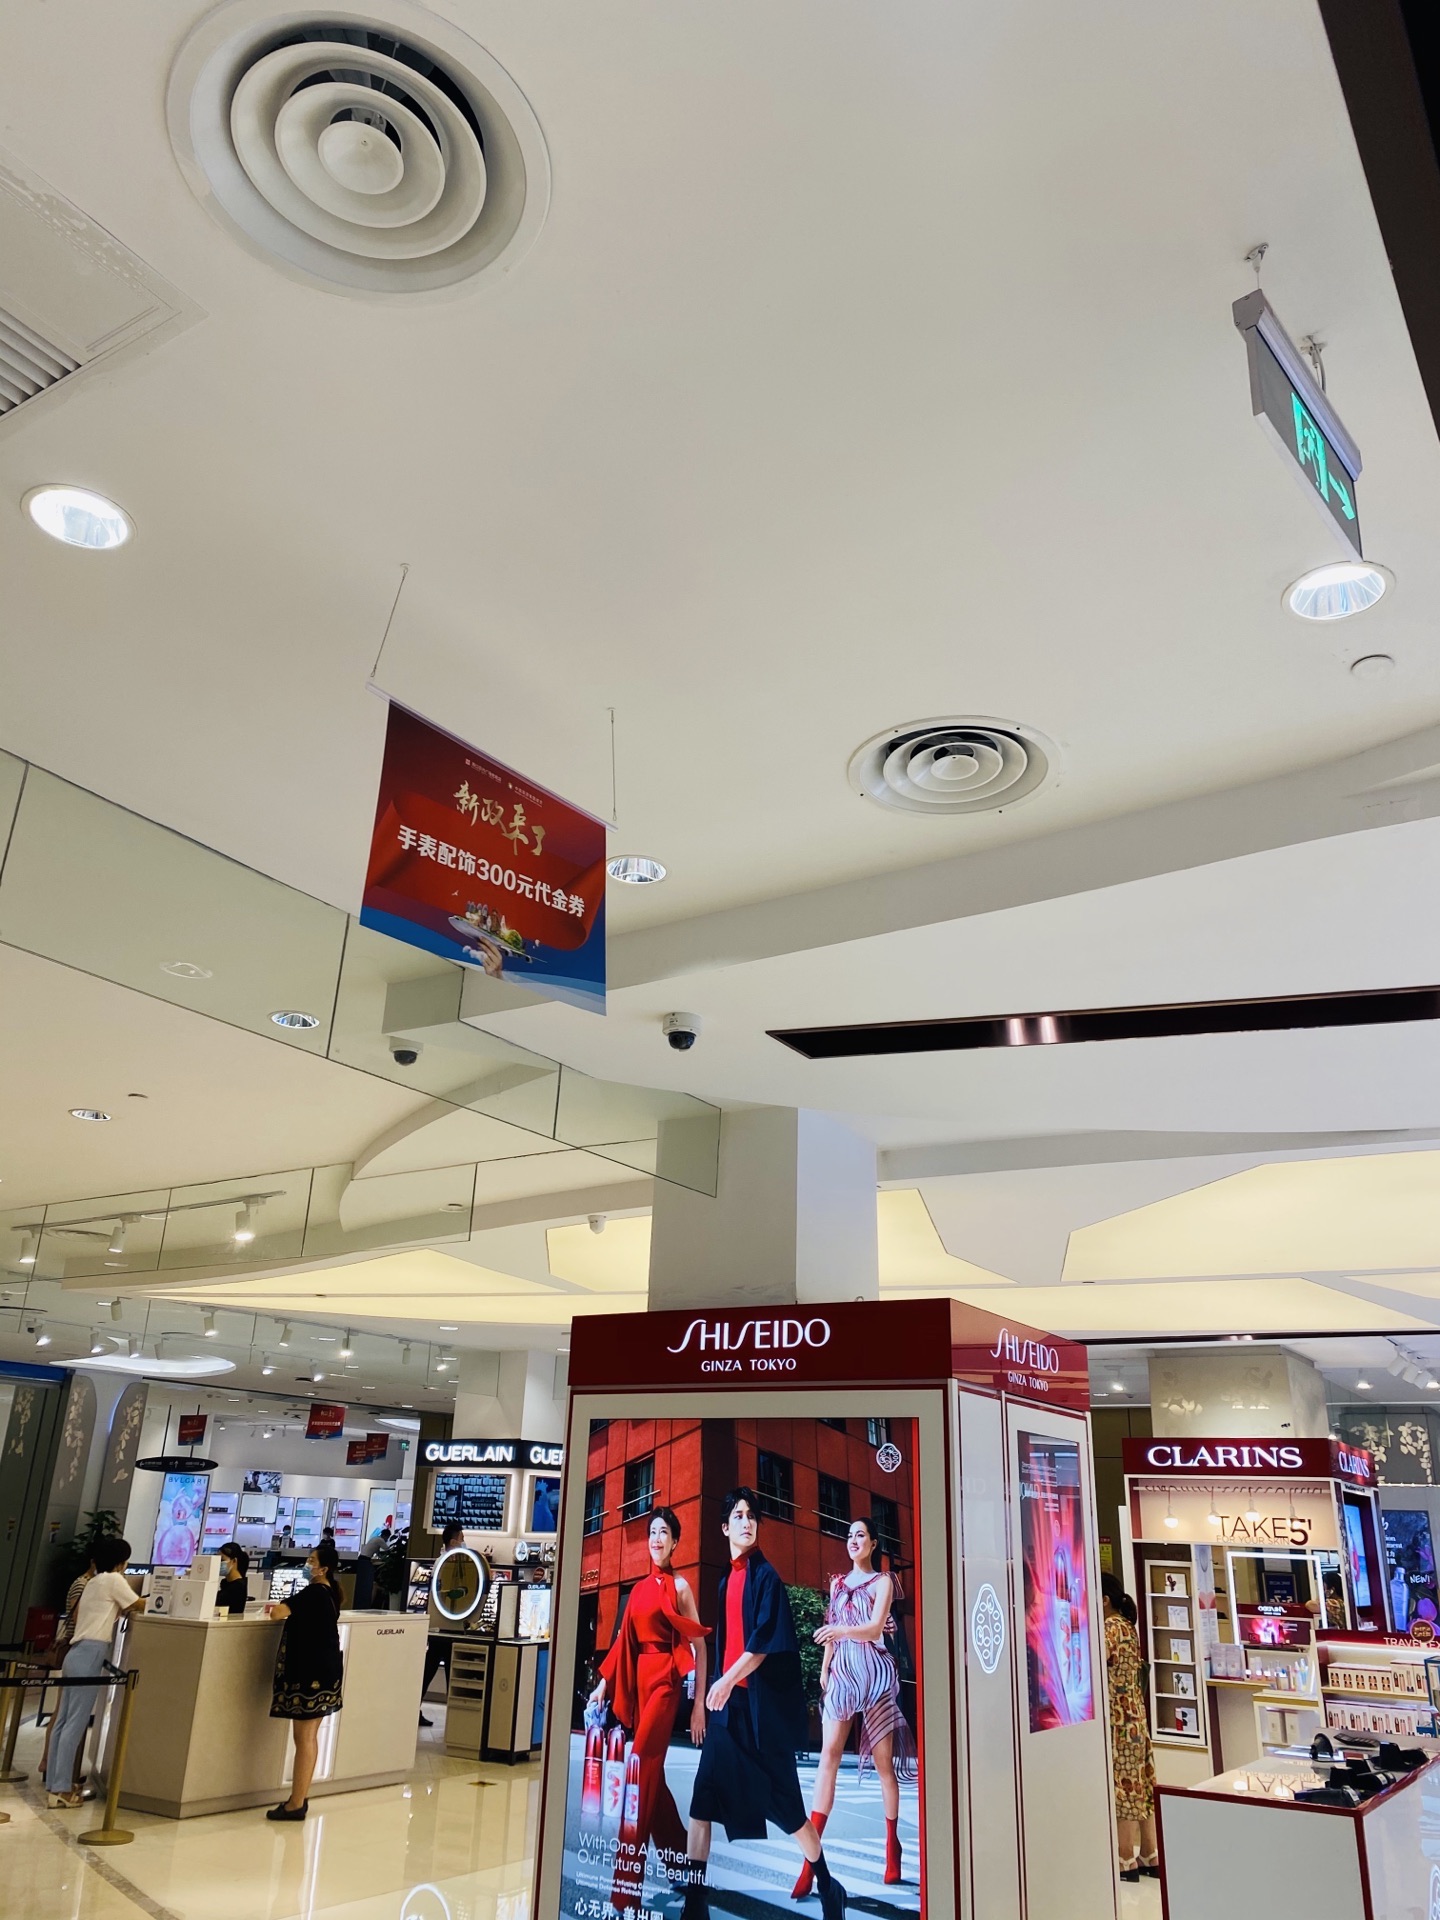 新罗免税店于新加坡樟宜机场开启无缝衔接式购物新体验